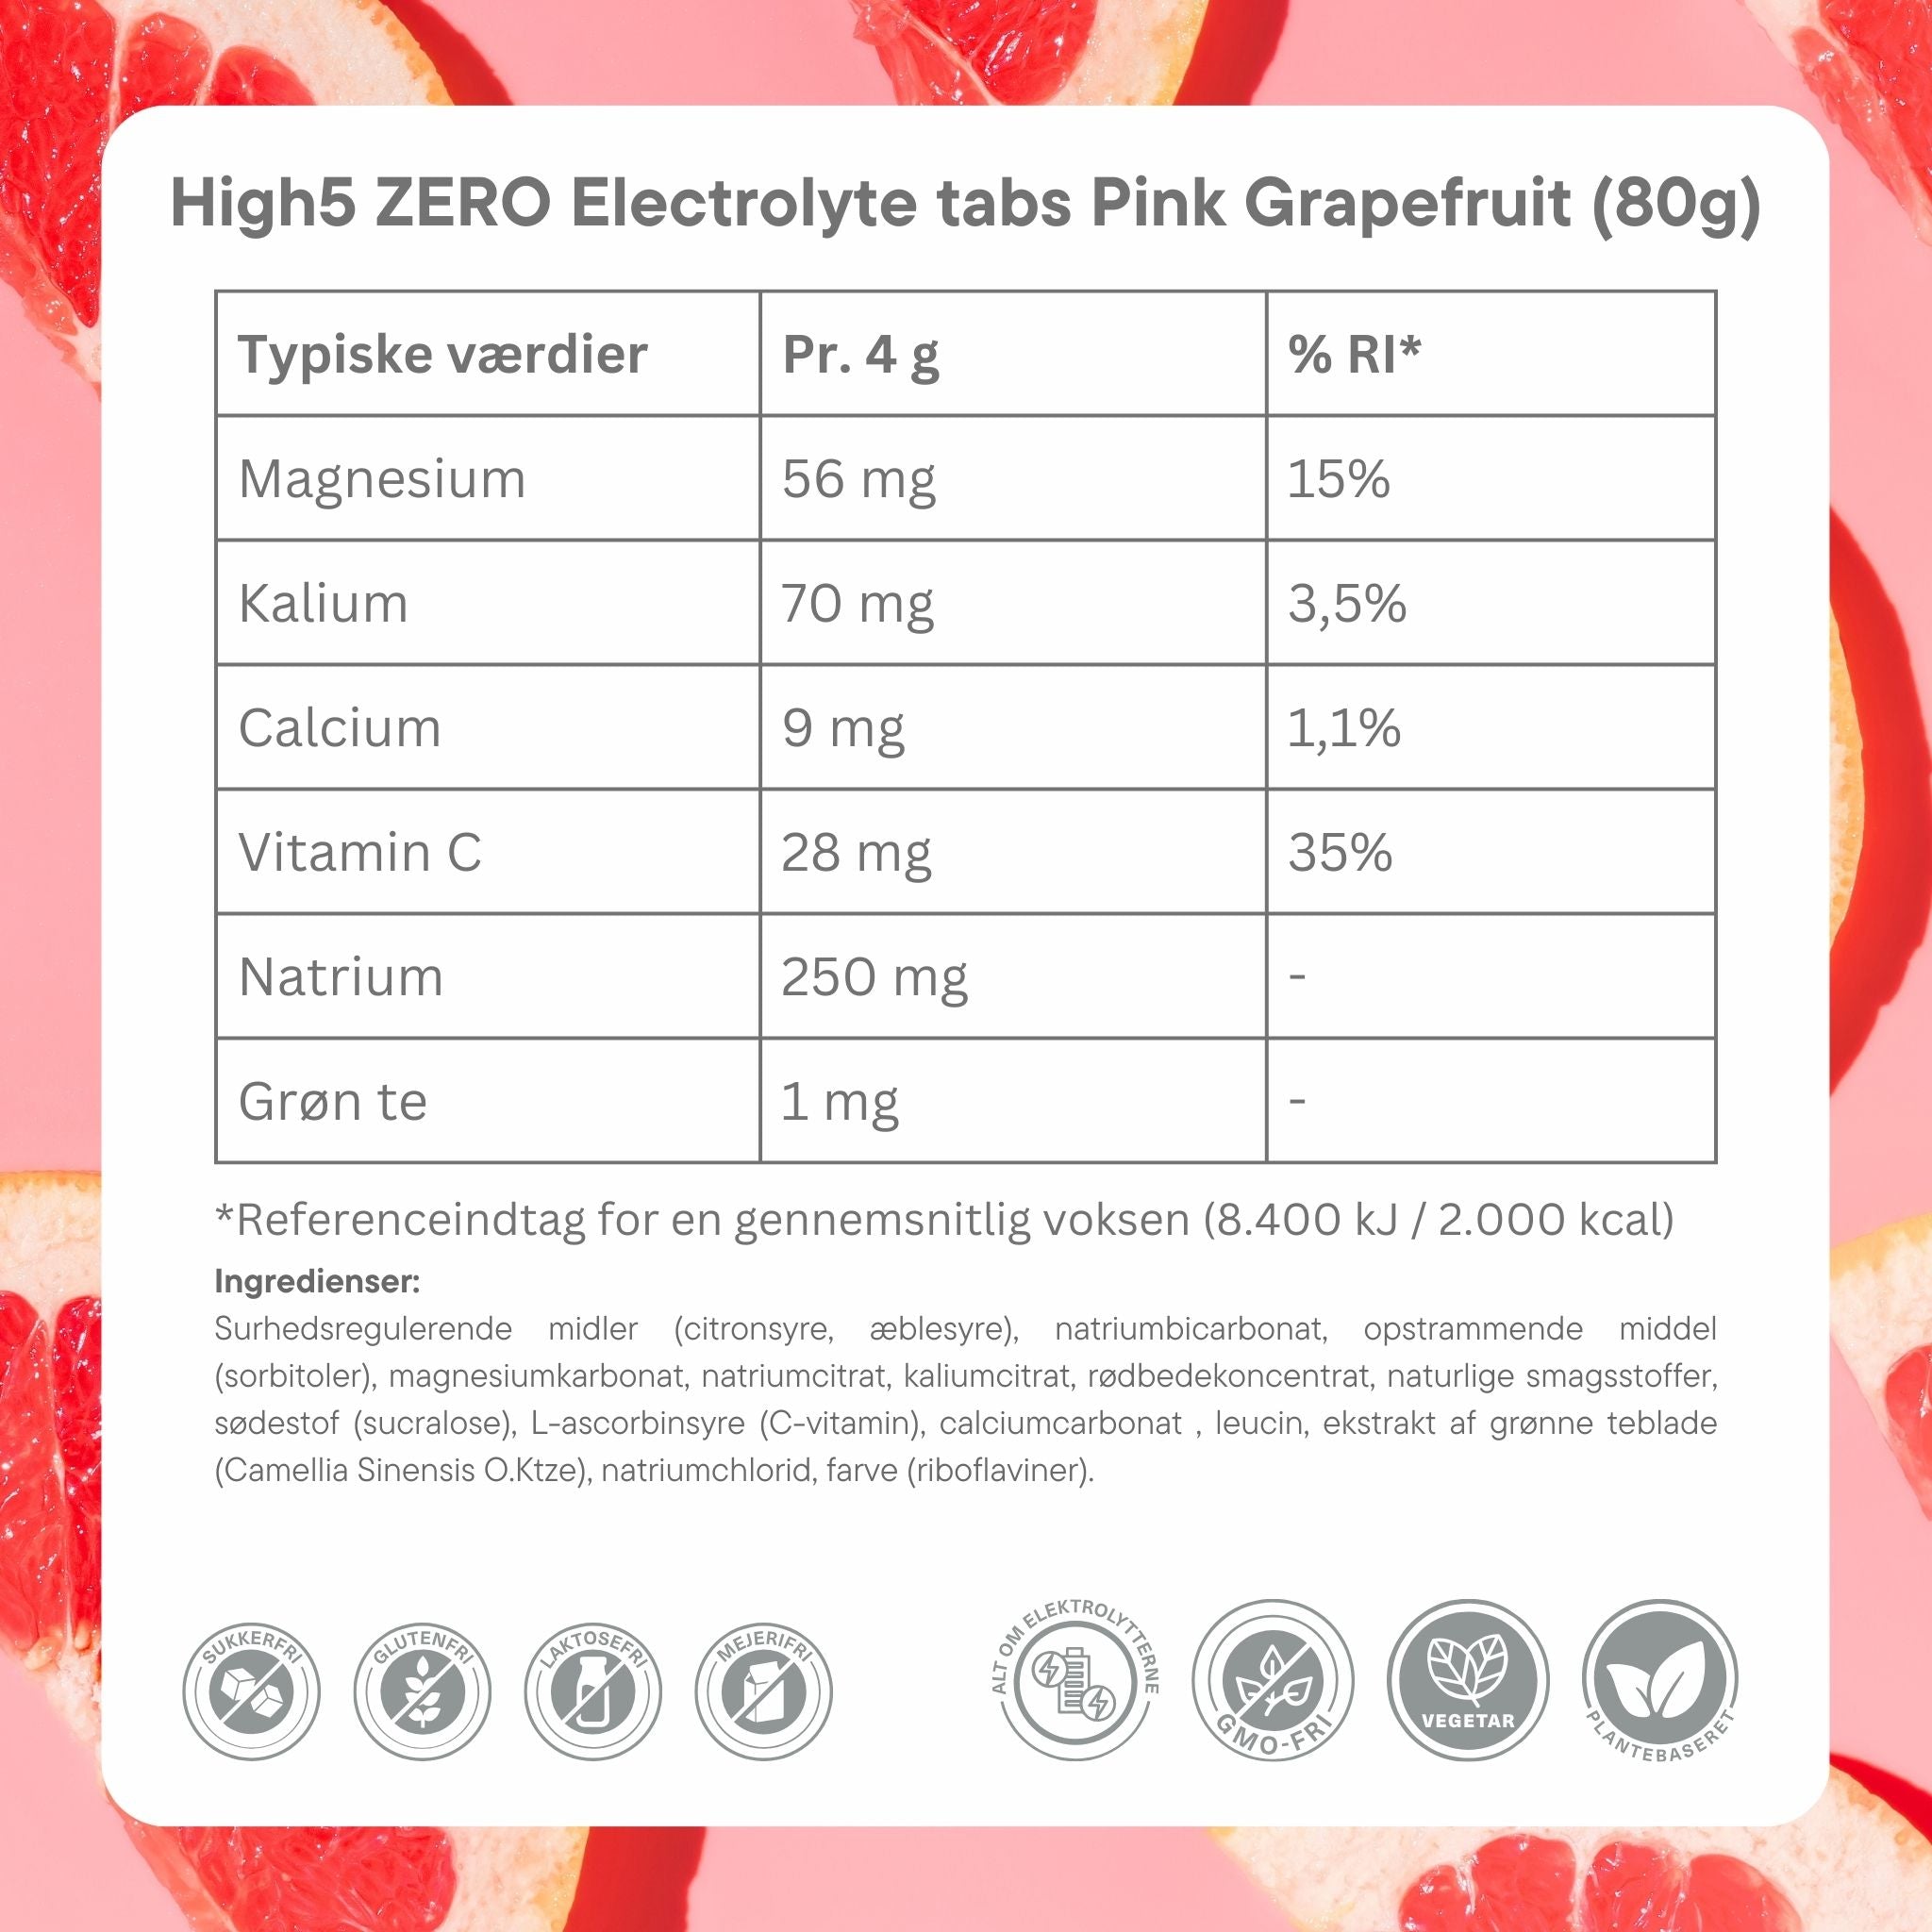 High5 Elektrolyttabs ZERO Pink Grapefruit (20 tabs)